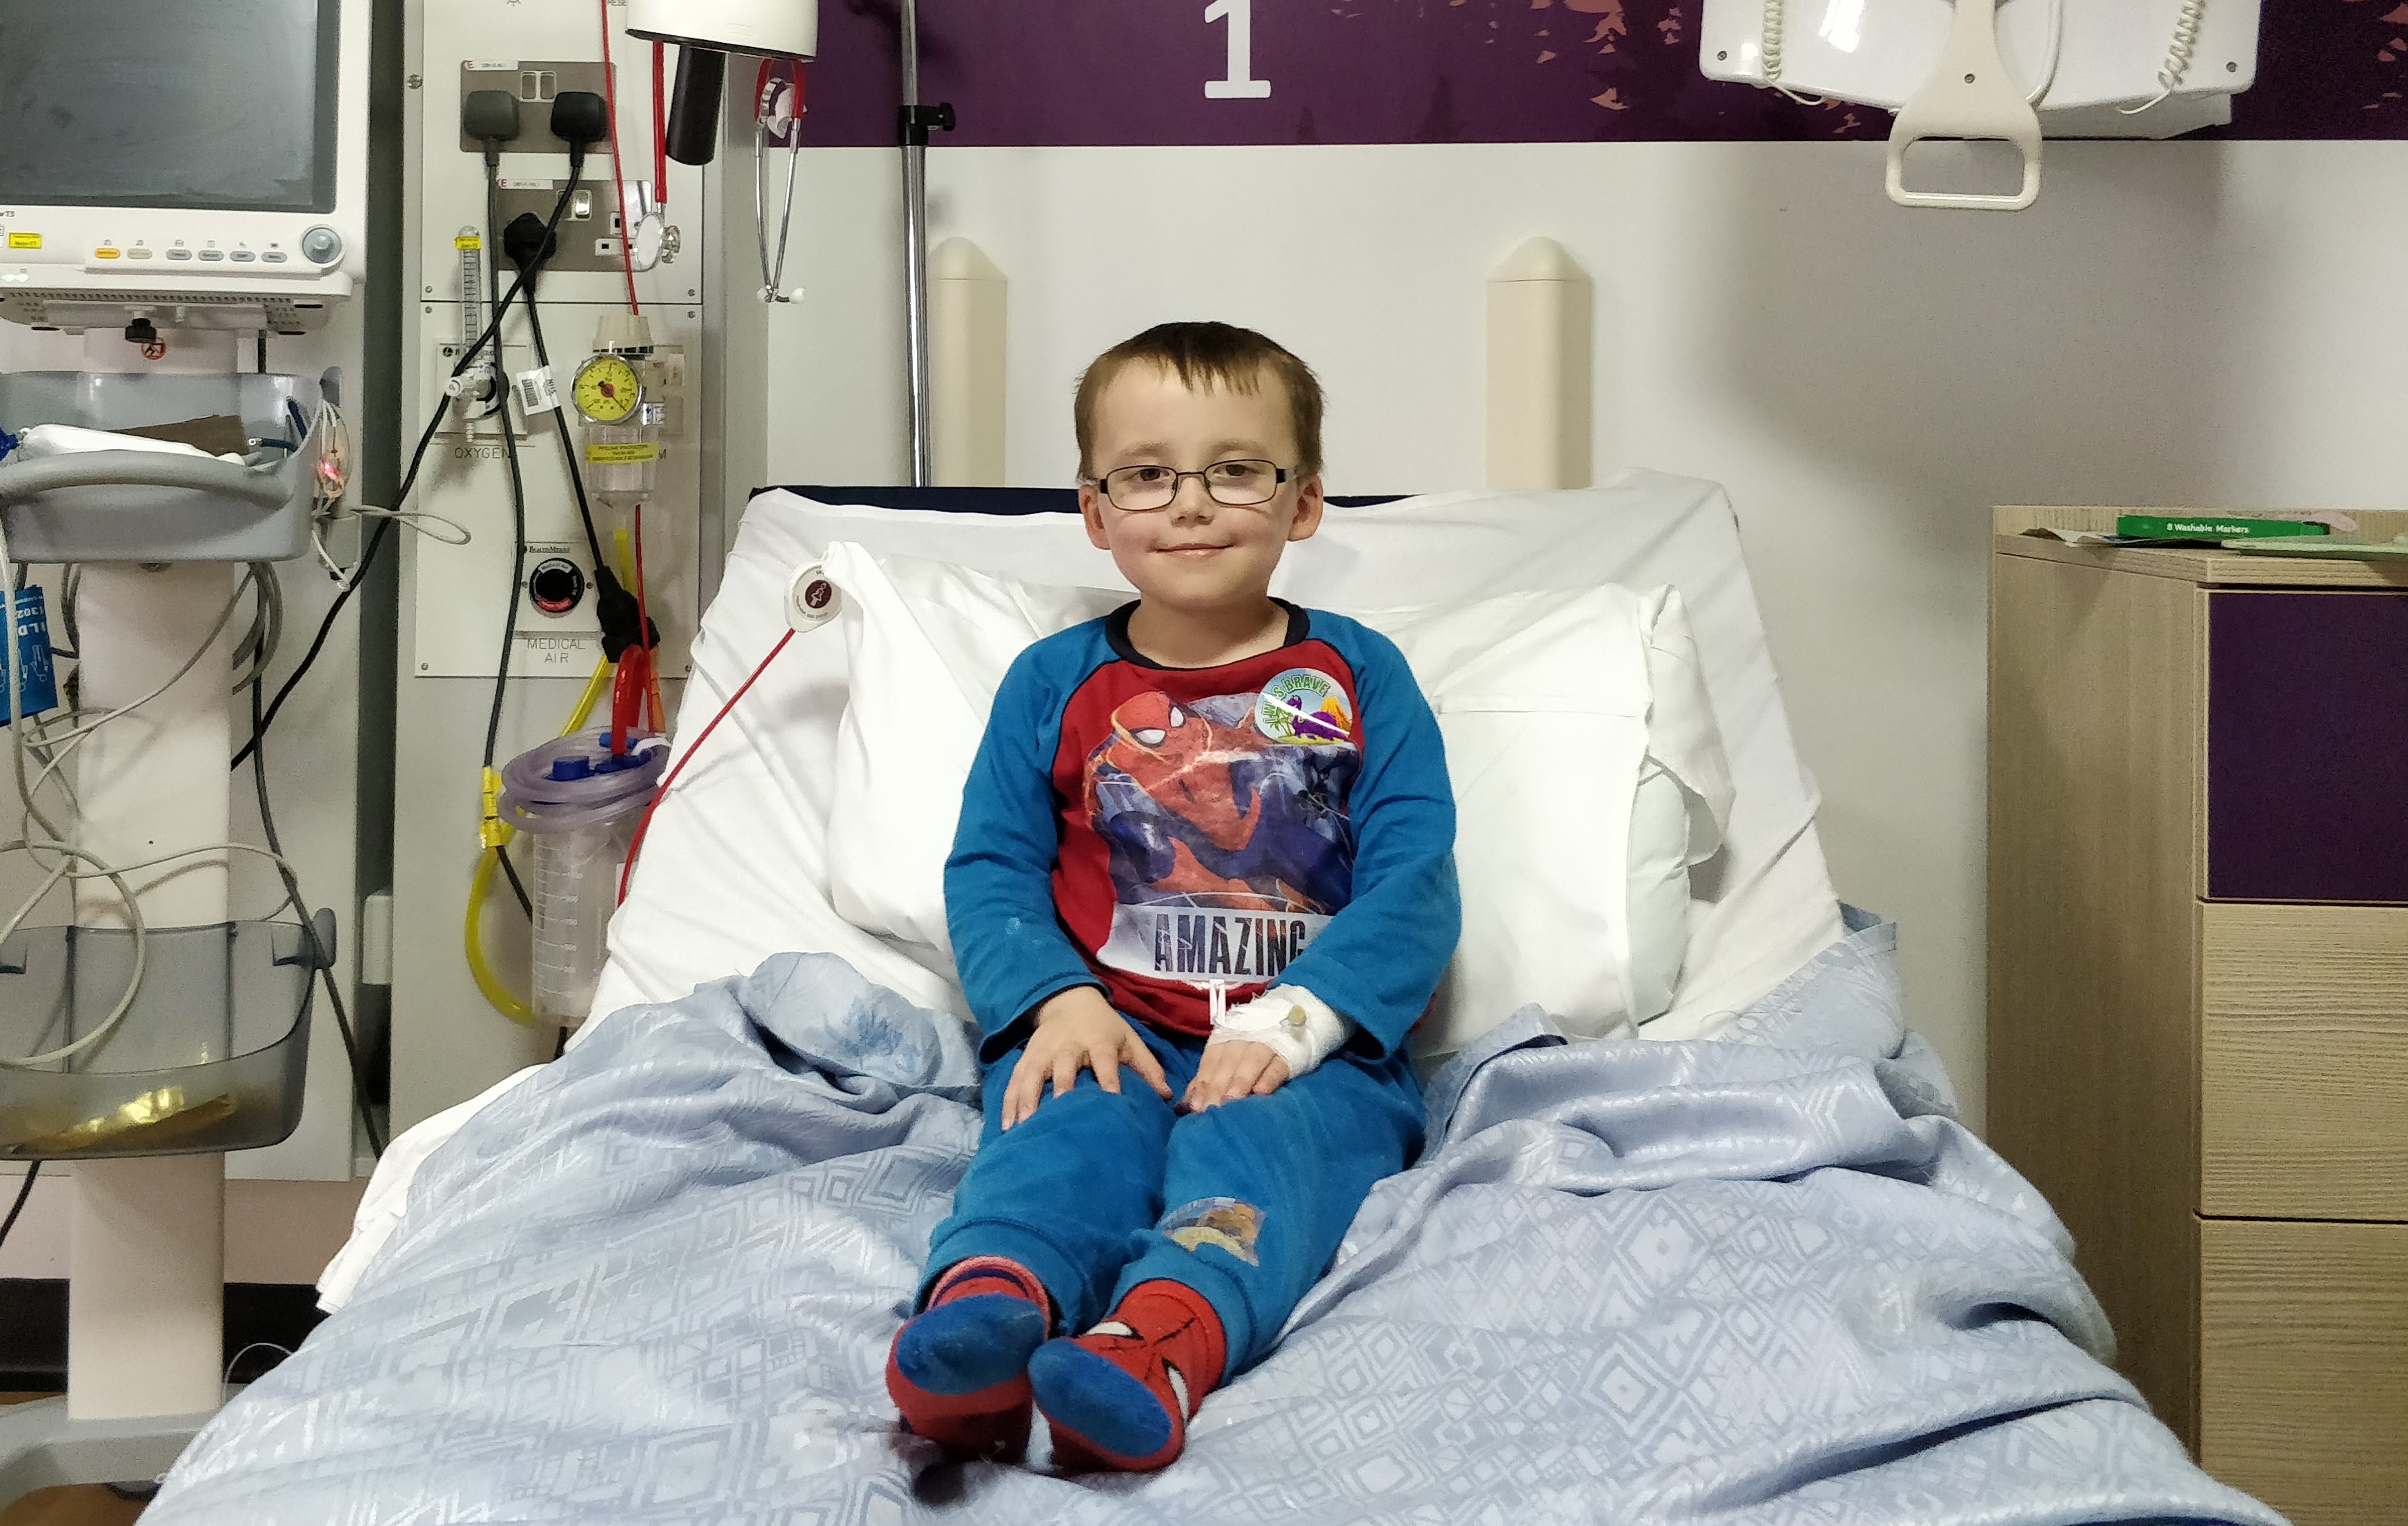 Ryan Whiteford, 11, has leukaemia